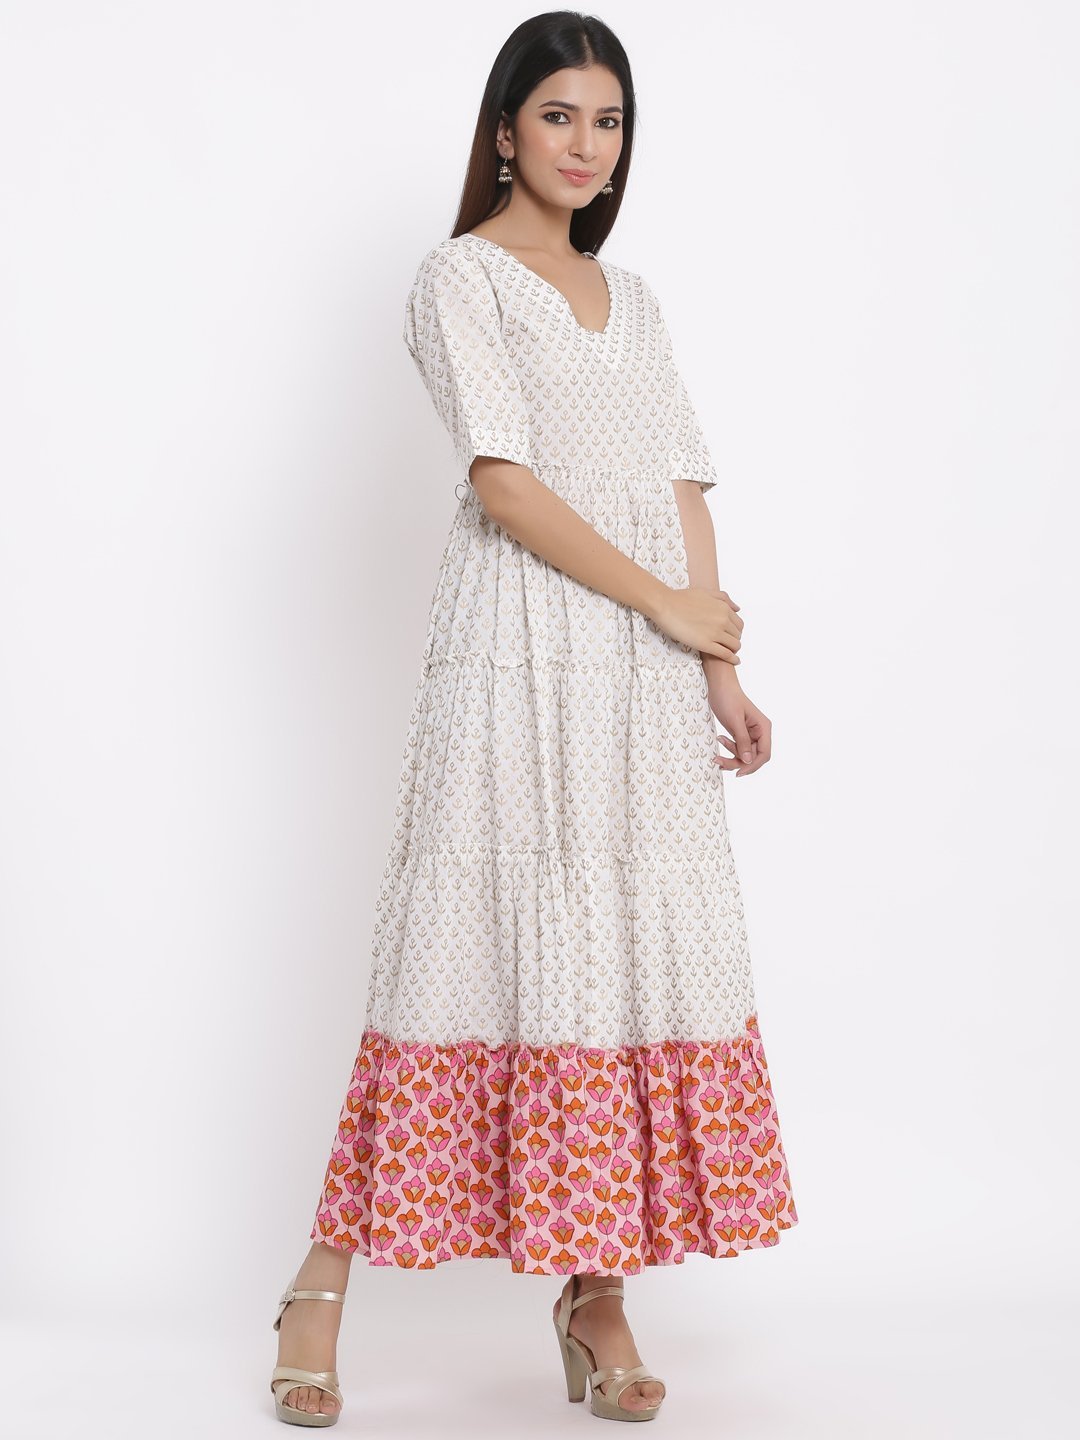 Women's White Cotton Maxi Dress by Kipek (1pc)